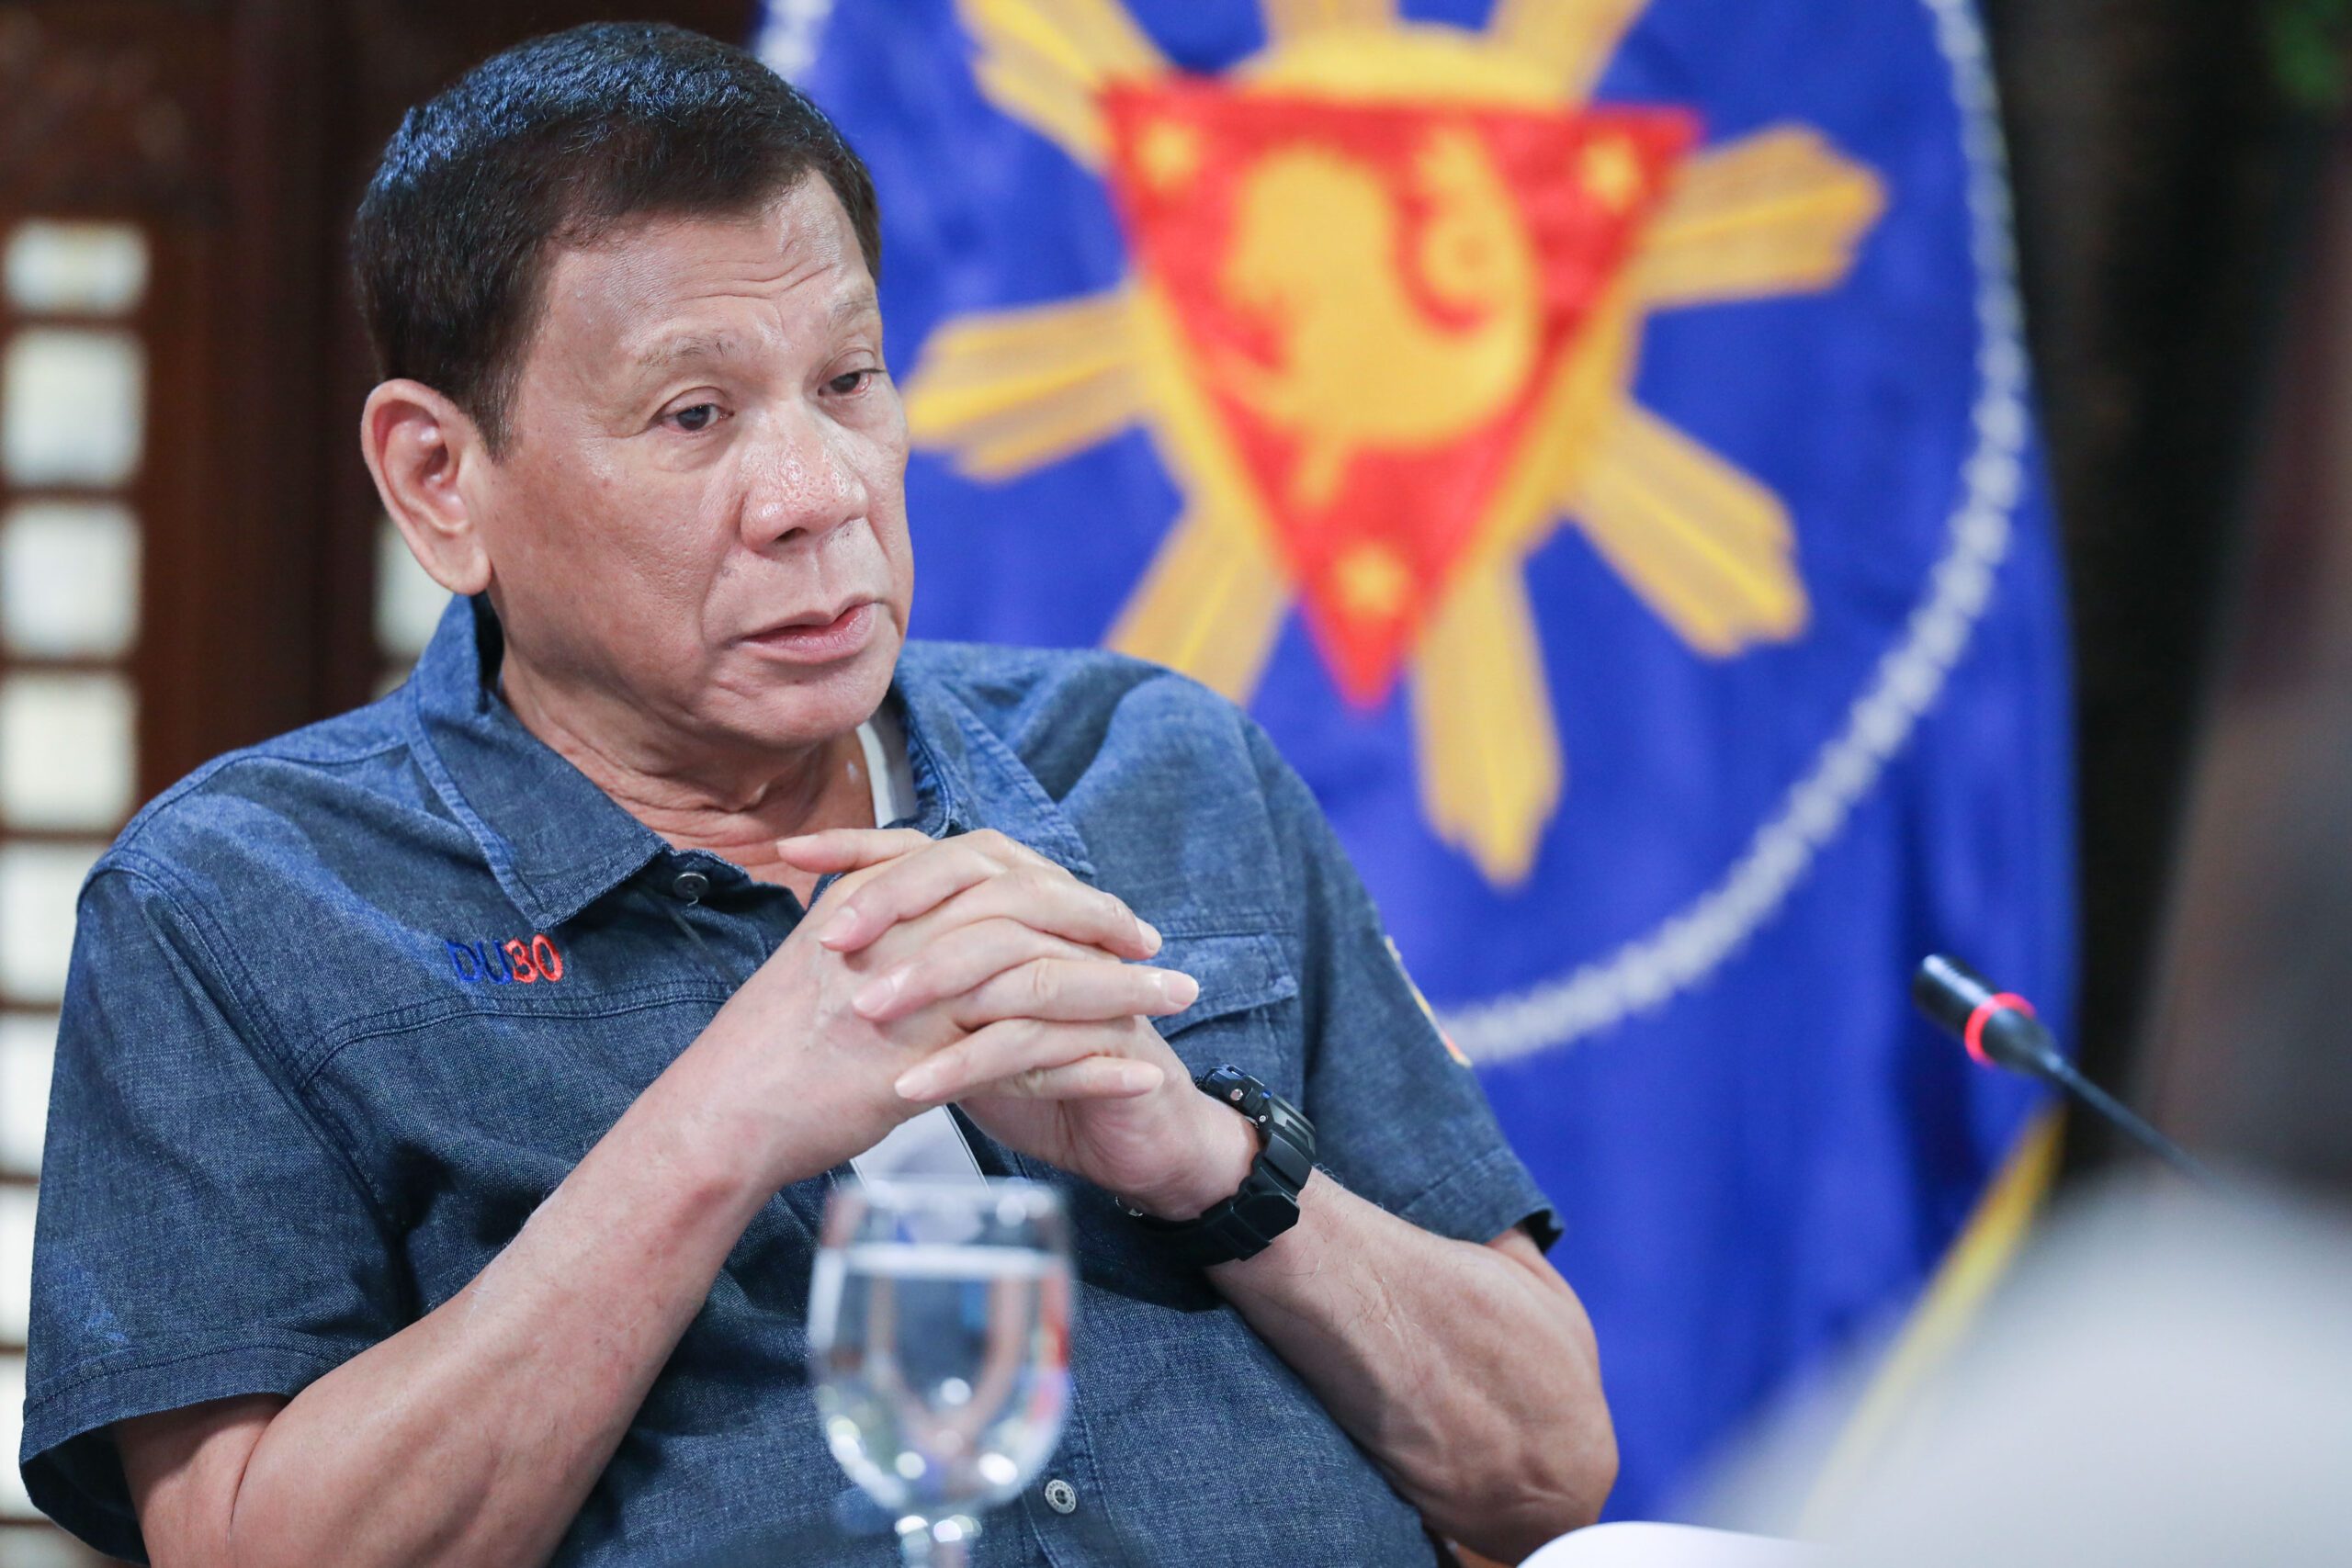 Duterte approves GCQ for Metro Manila starting June 1